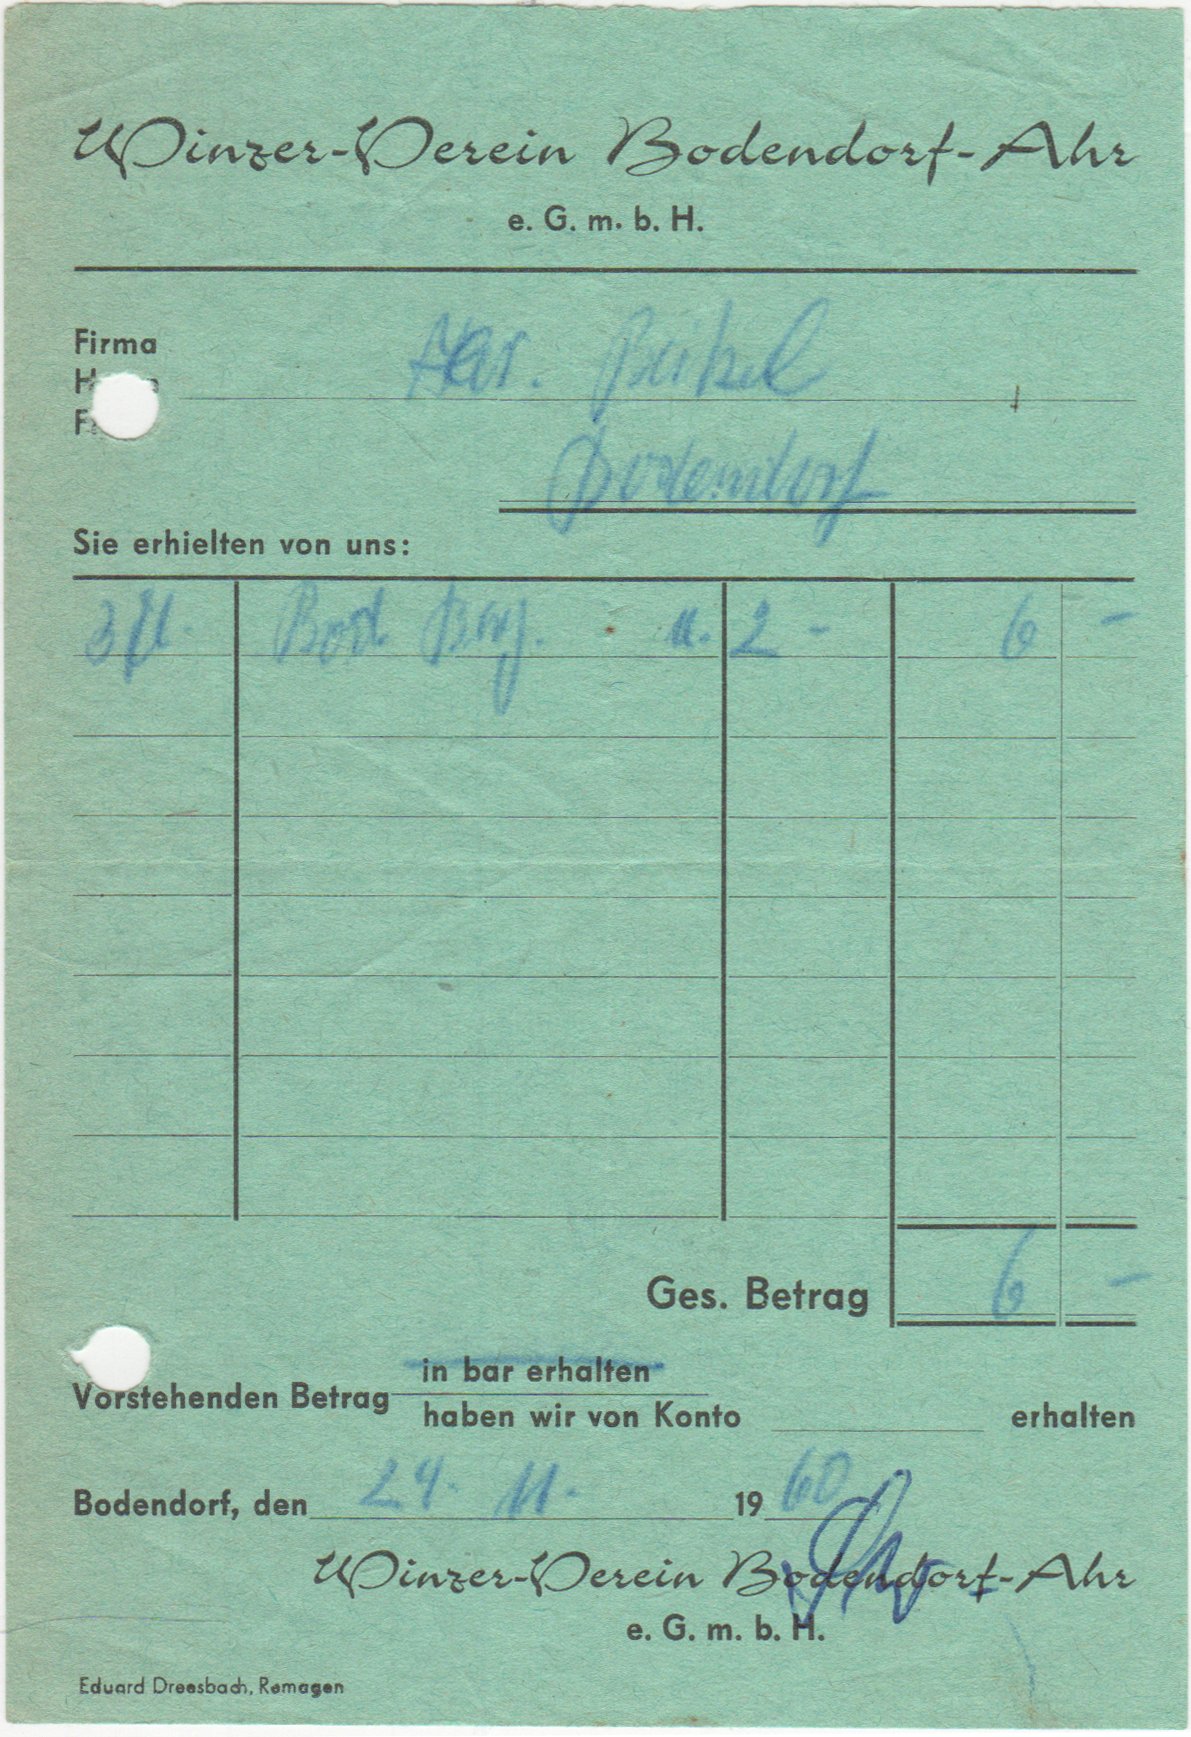 Weinrechnung des Bodendorfer Wiinzer-Verein vom 24. 11. 1960 (Heimatarchiv Bad Bodendorf CC BY-NC-SA)